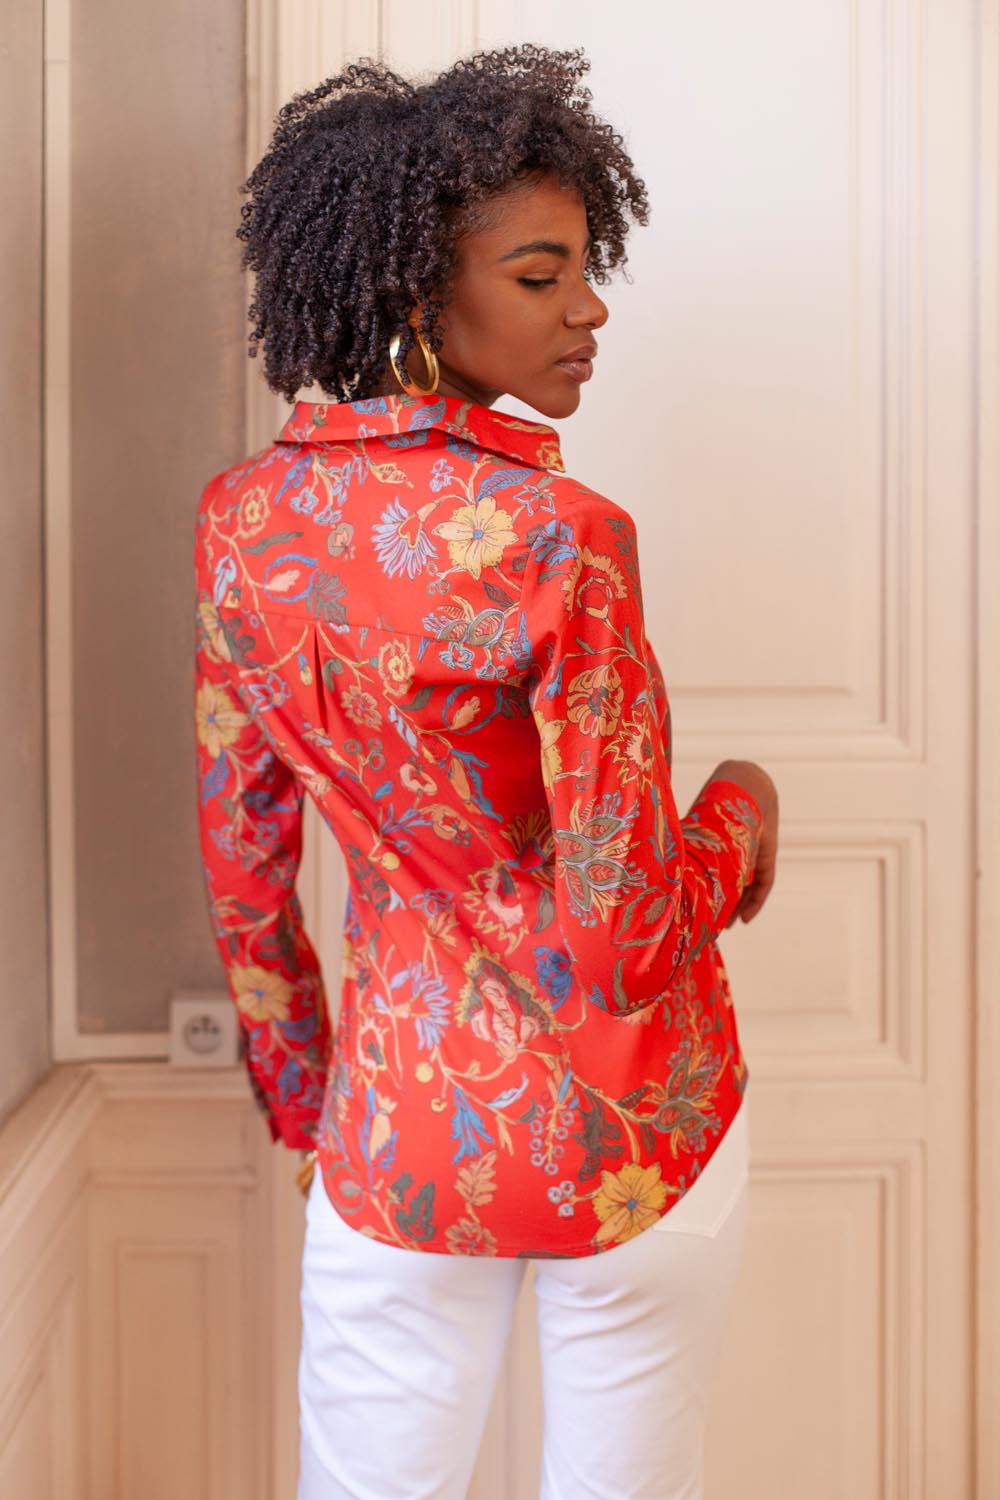 Chemise femme à manches longues couleur rouge orangé. Conception et fabrication française et réalisé dans un coton bio pour une mode éthique.